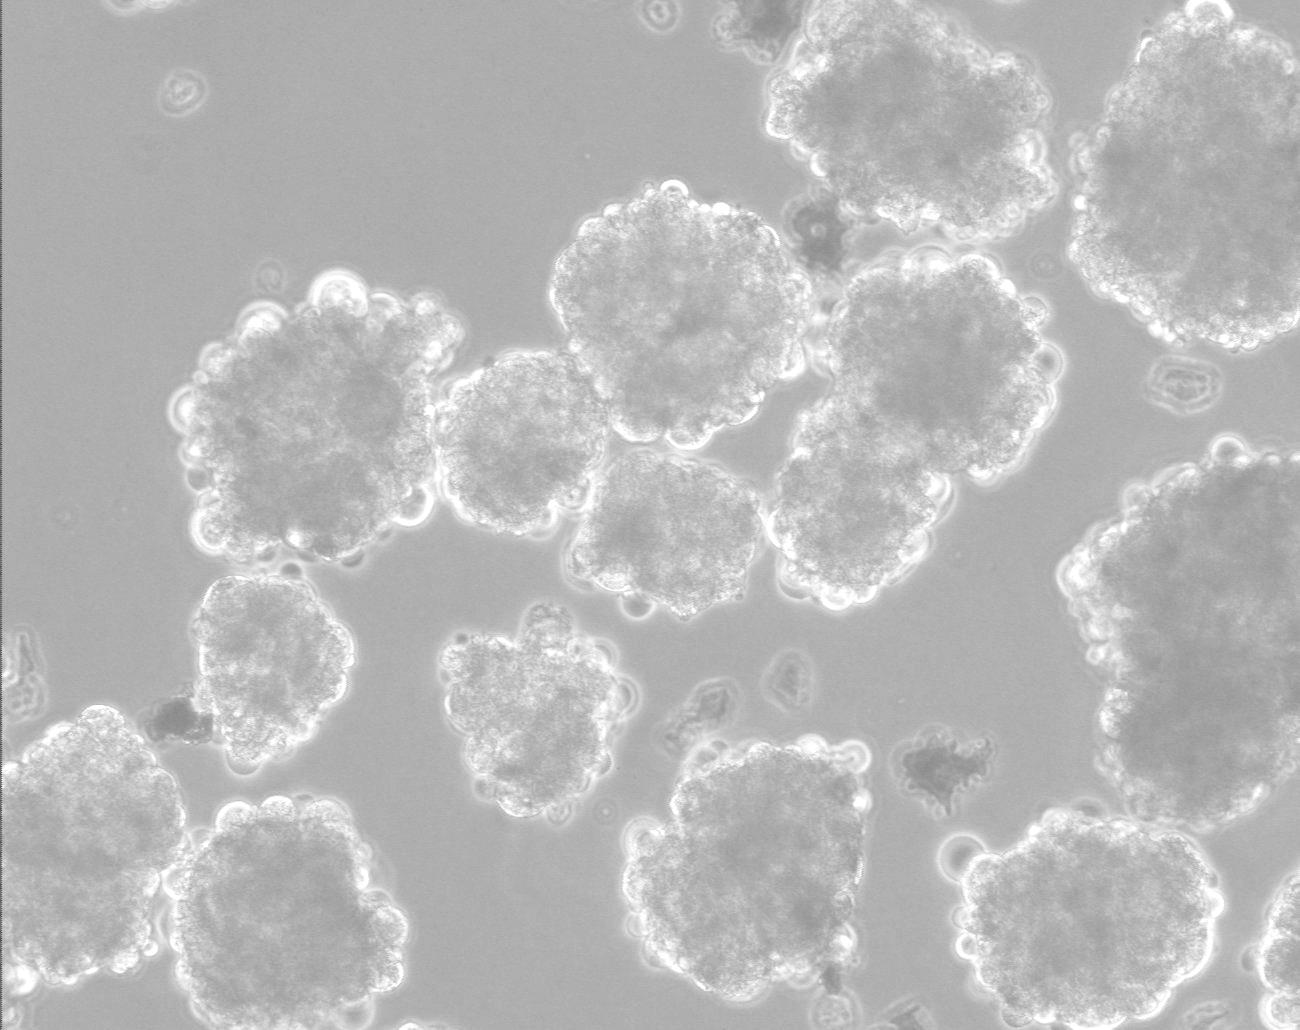 איור 4 צברים של תאי גזע עובריים אנושיים בתרחיף. באדיבות פרופ' בנימין ראובינוף וד"ר דבורה שטיינר